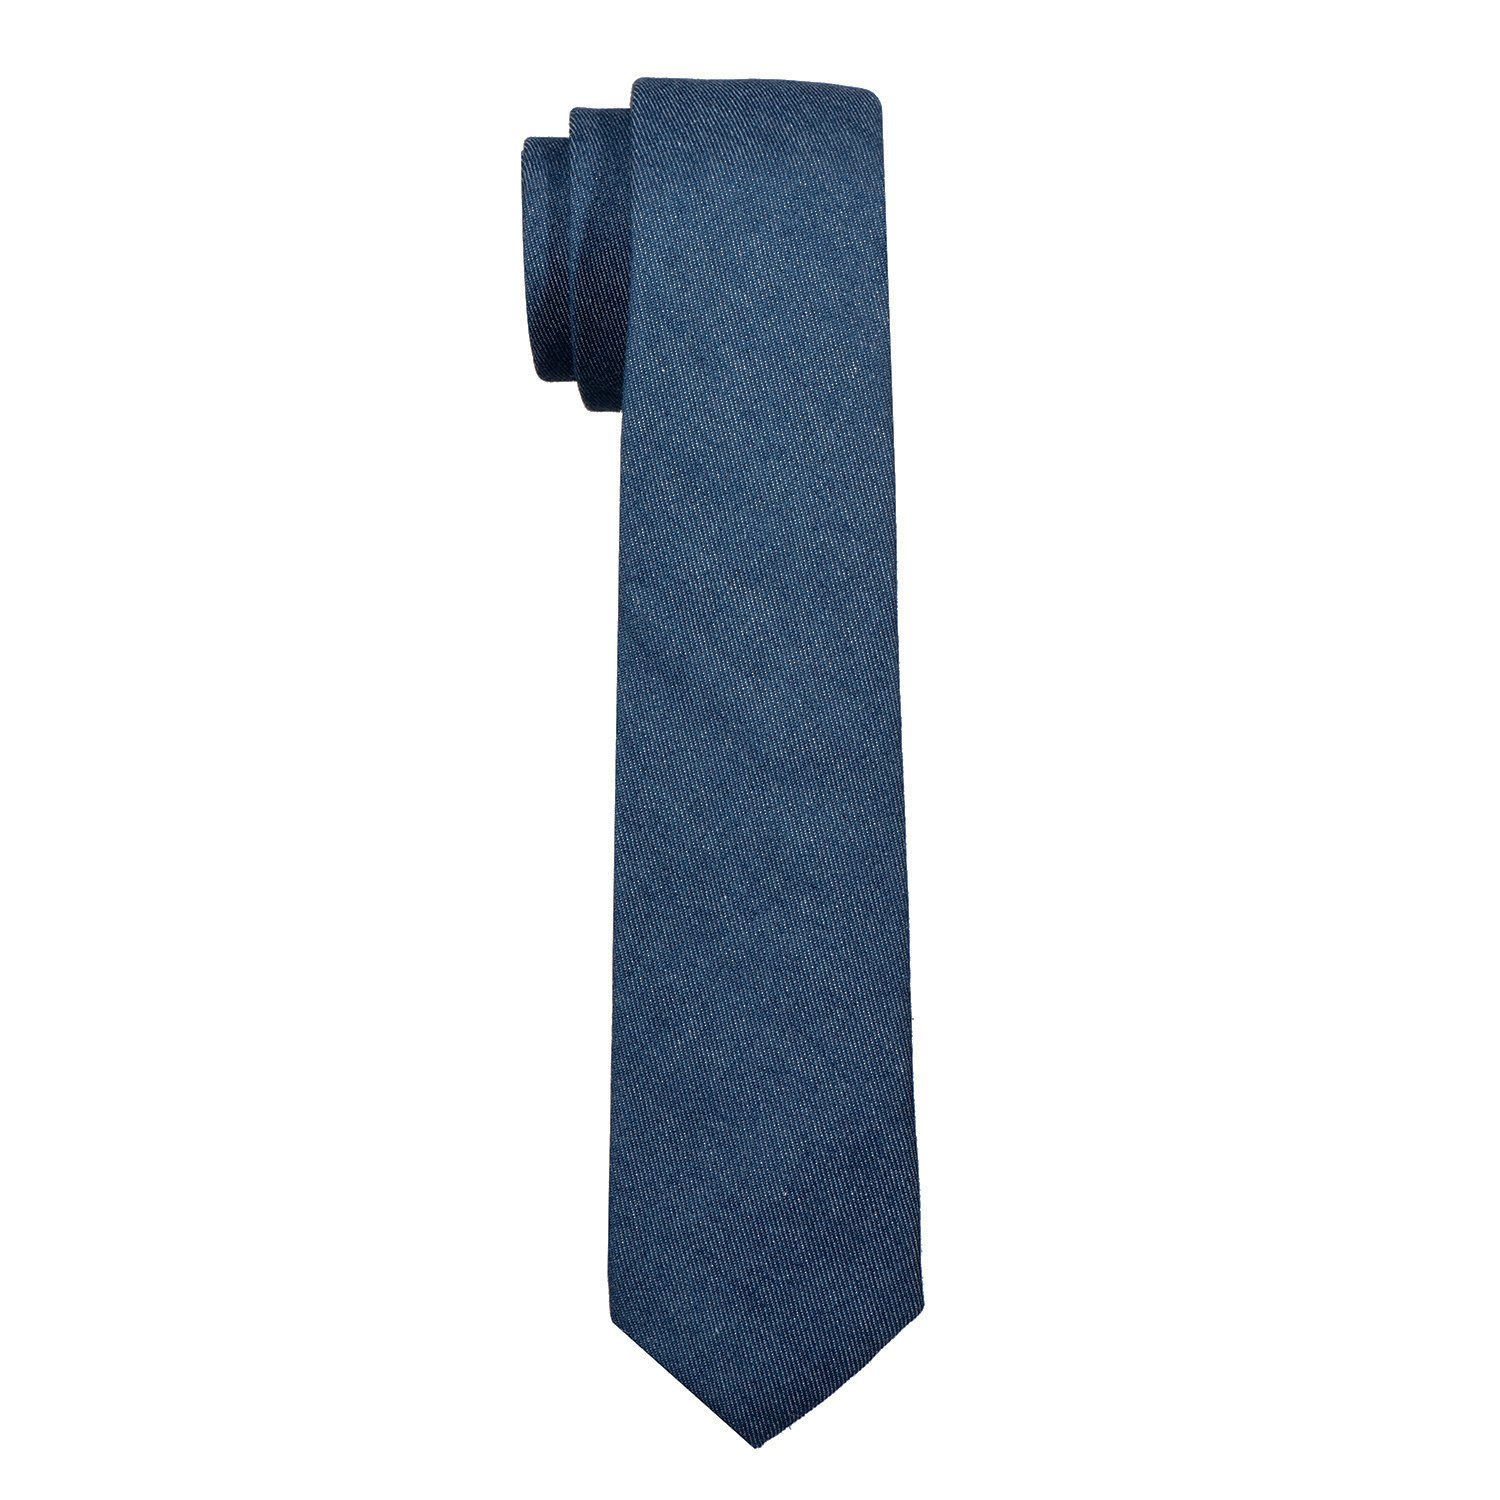 Muster, Herren (Packung, 1x Veranstaltungen gepunkt verschiedene 6 und einfarbig jeans-blau cm für festliche kariert oder Krawatte DonDon Krawatte Baumwolle, Büro 1-St., Krawatte)